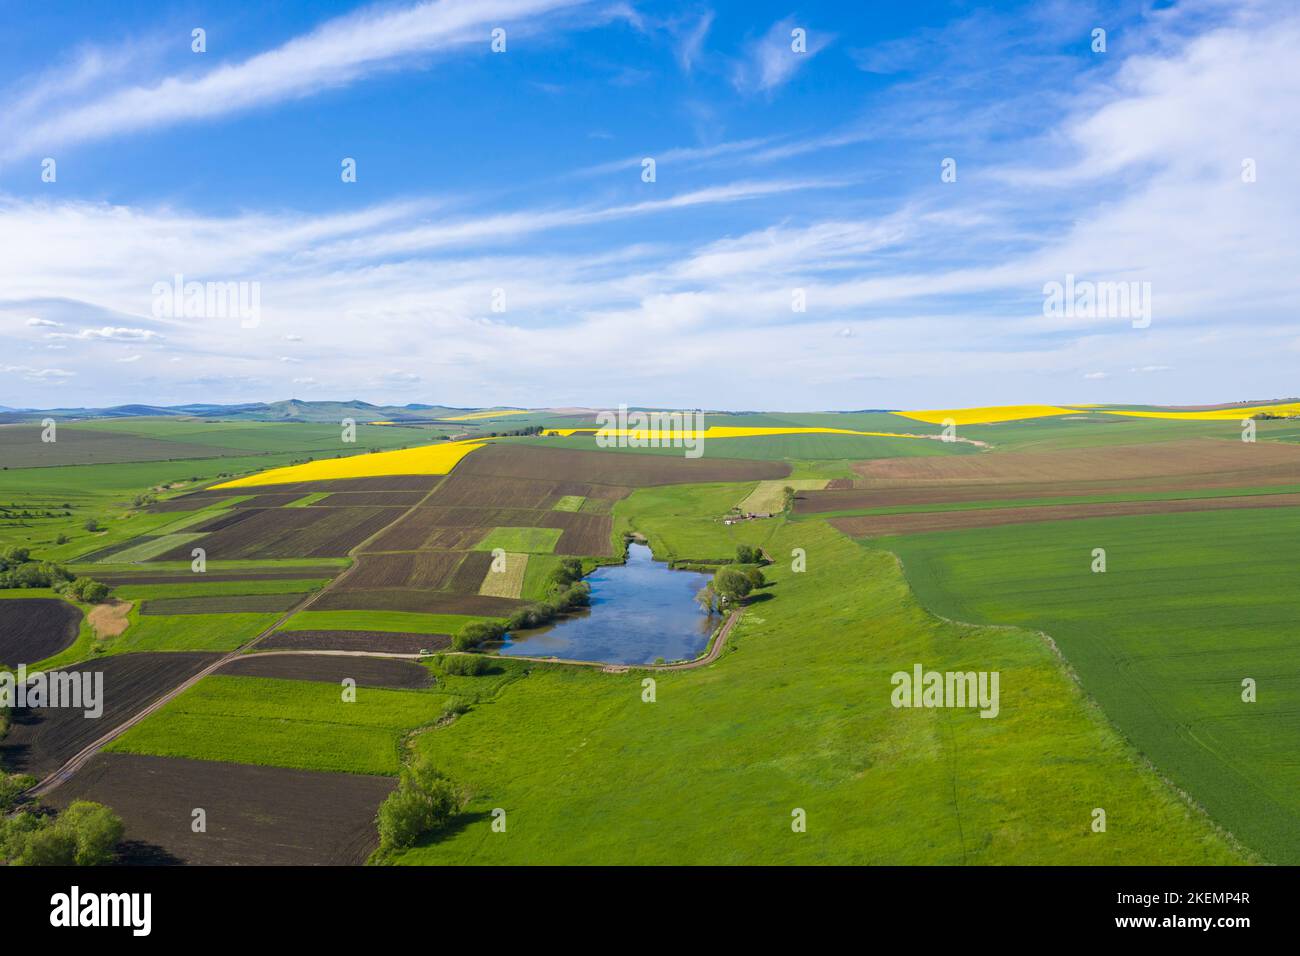 Vue aérienne des champs de printemps dans une zone rurale, des champs de canola et de céréales par le dessus Banque D'Images